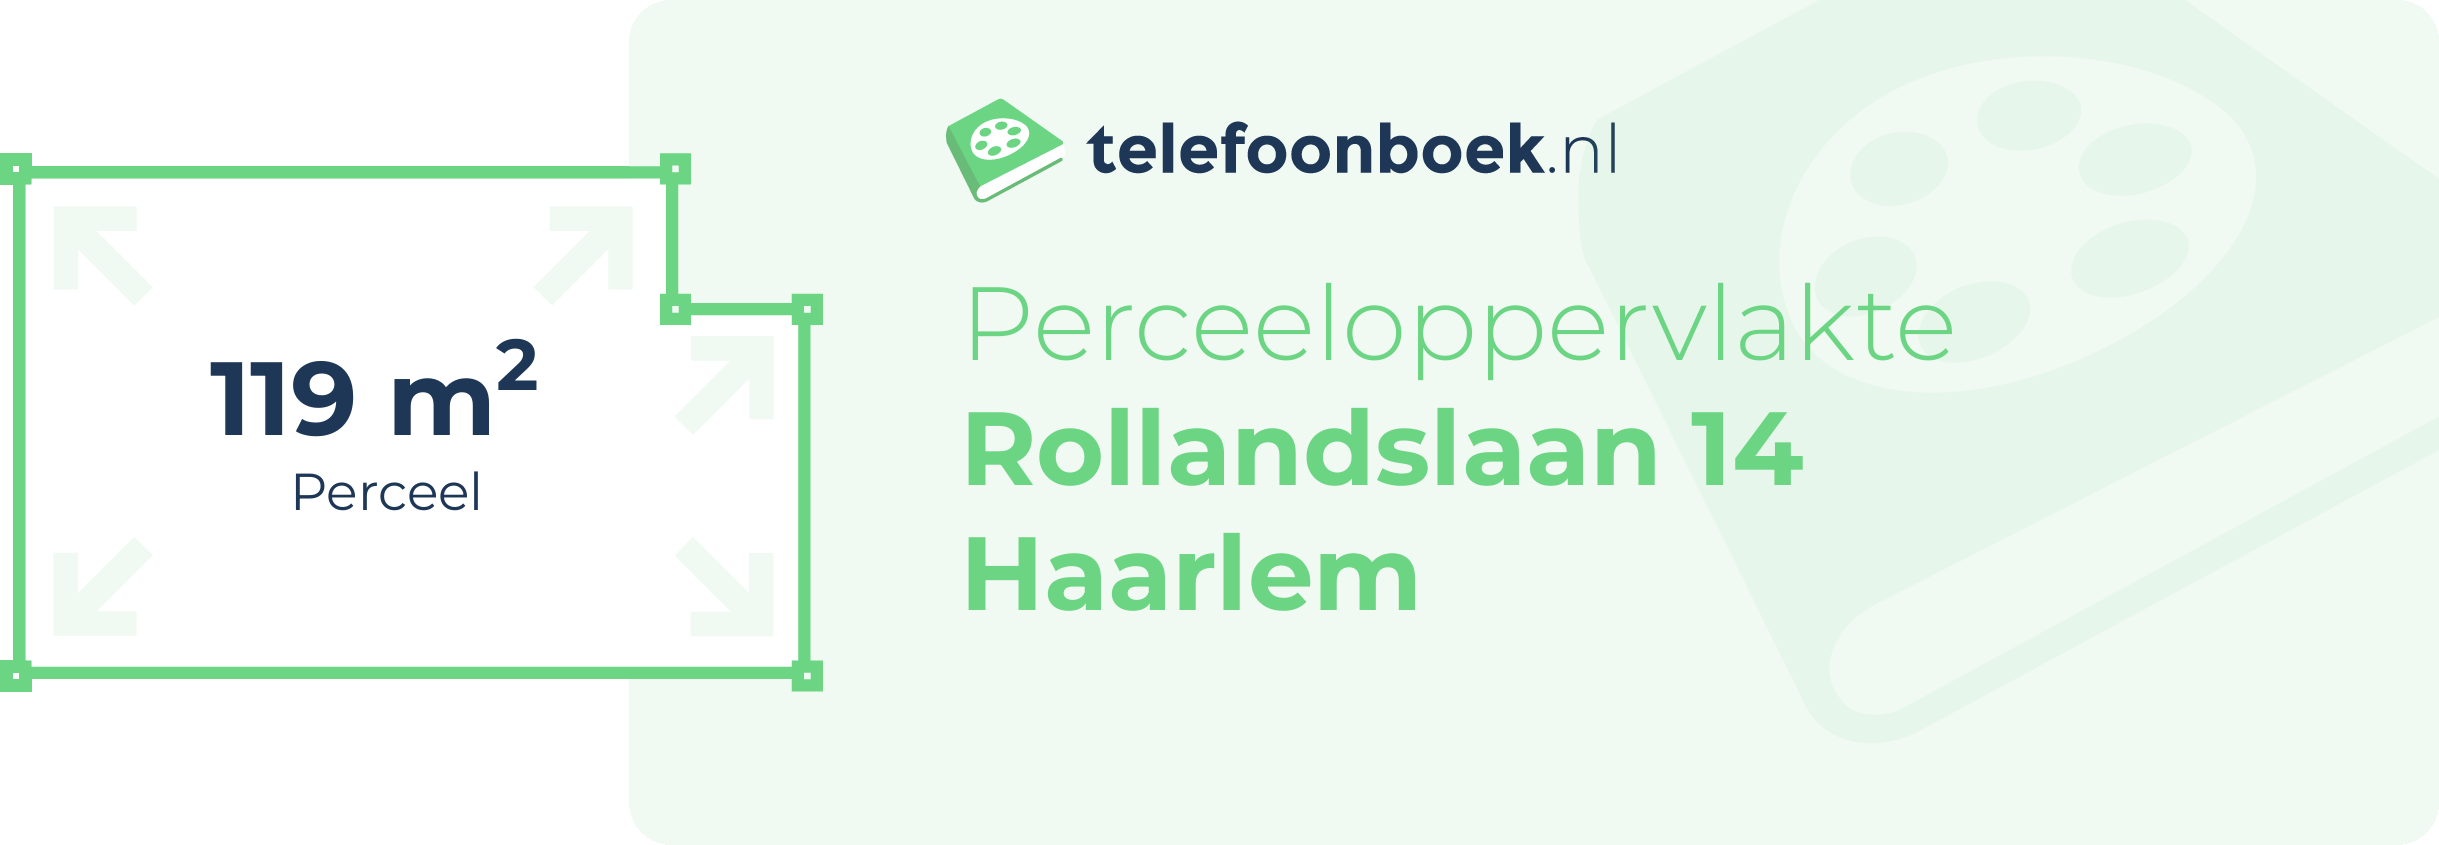 Perceeloppervlakte Rollandslaan 14 Haarlem